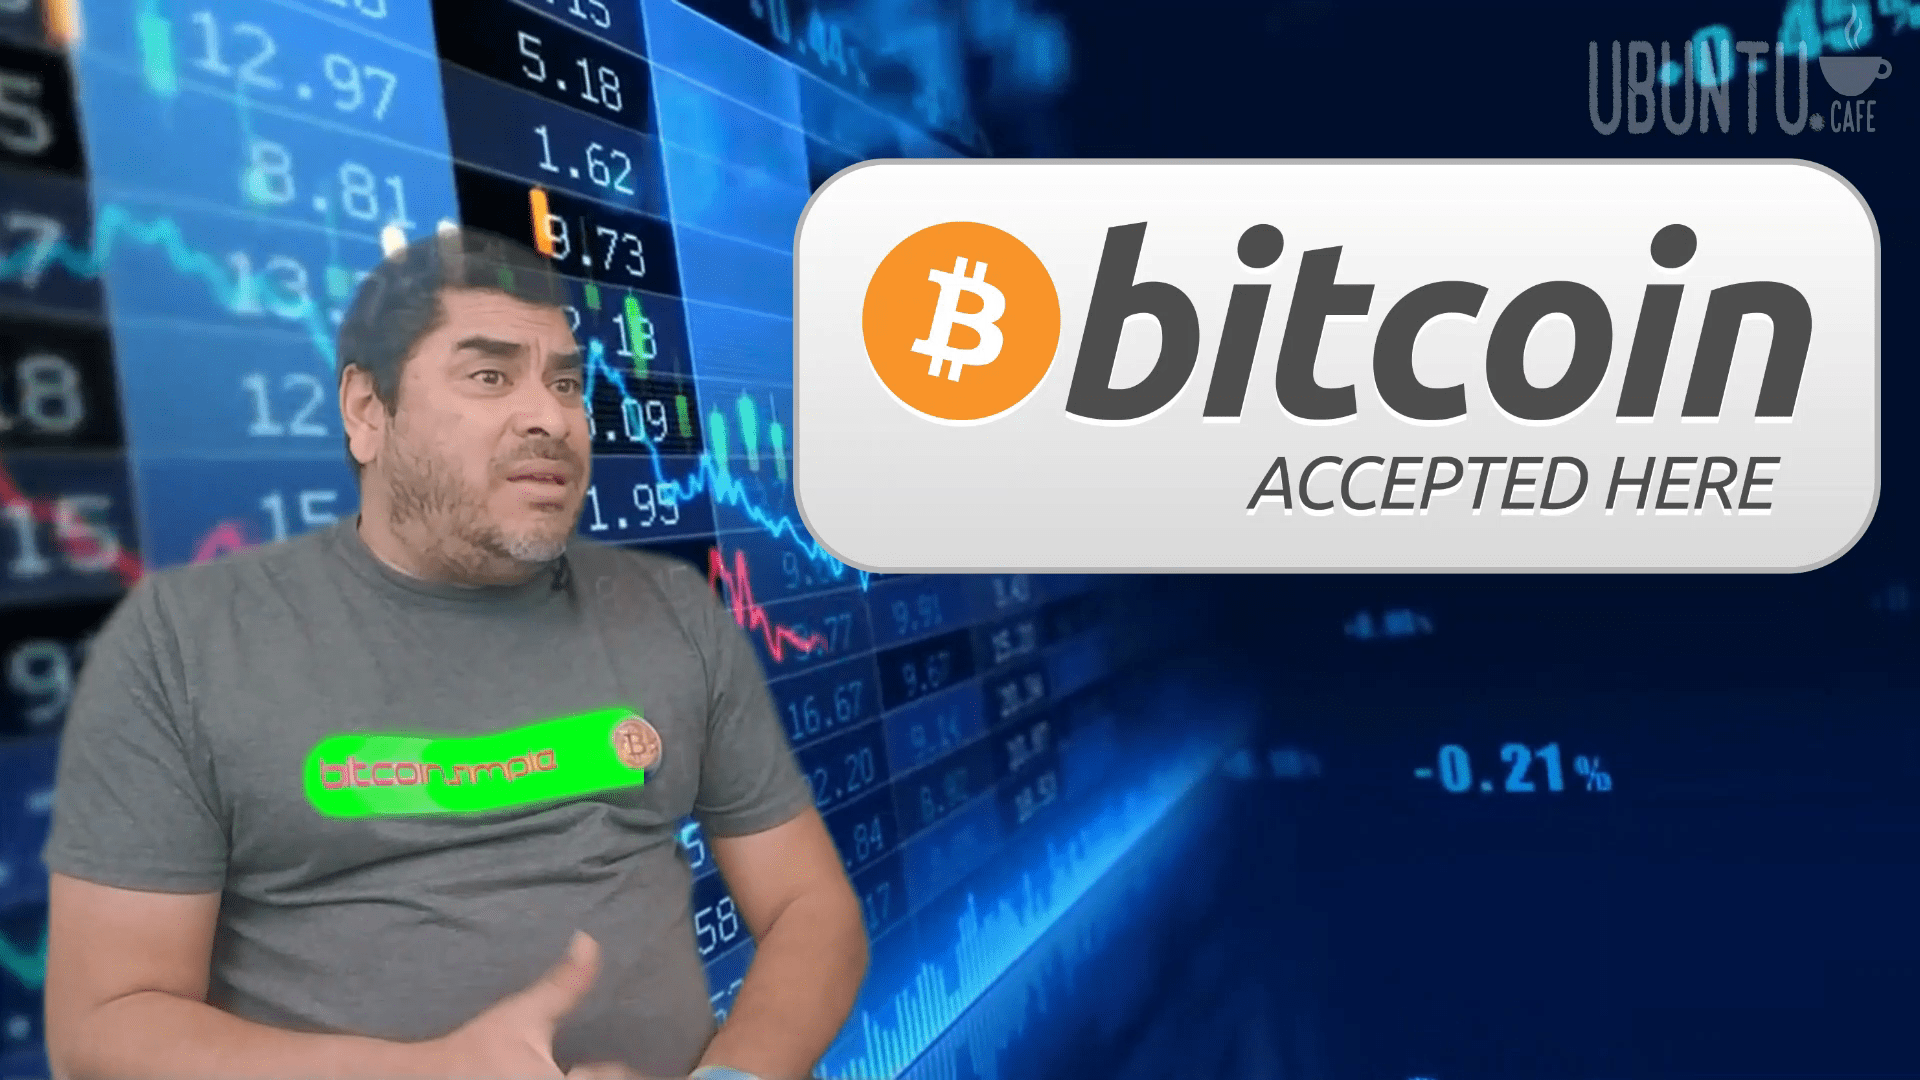 Bitcoin y Criptomonedas Explicadas por Juan Rodulfo